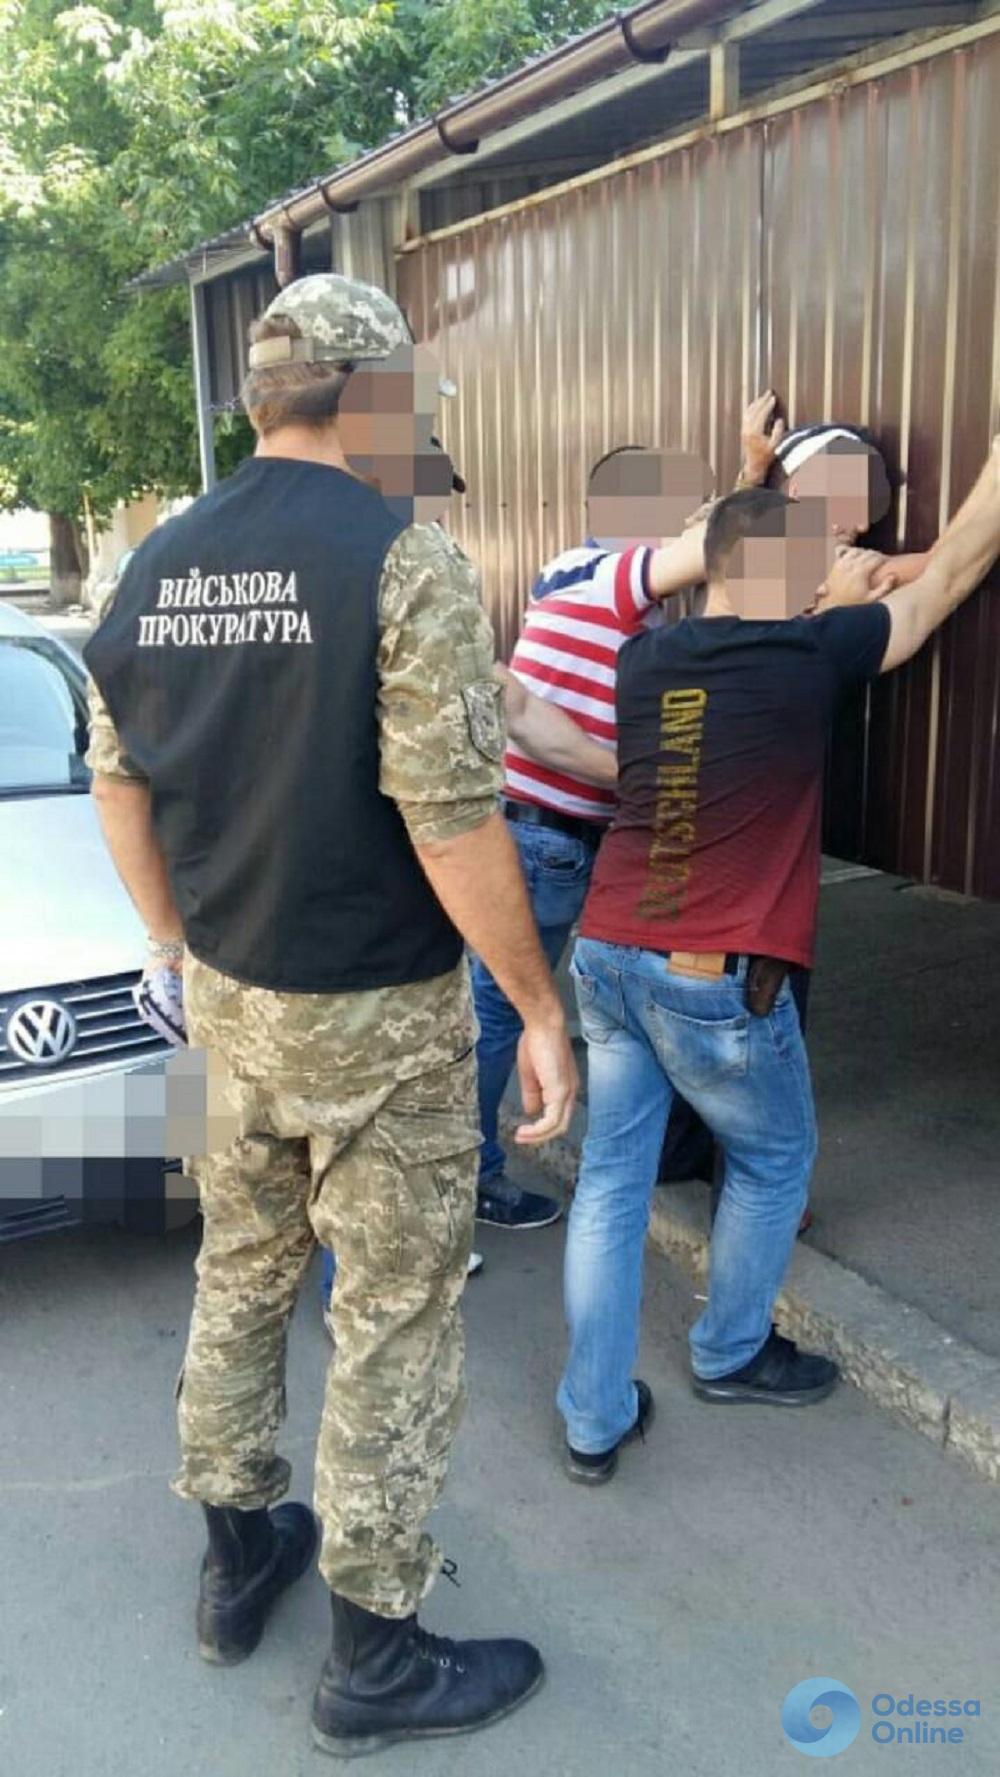 Переделывал и продавал: в Одесской области задержали торговца оружием